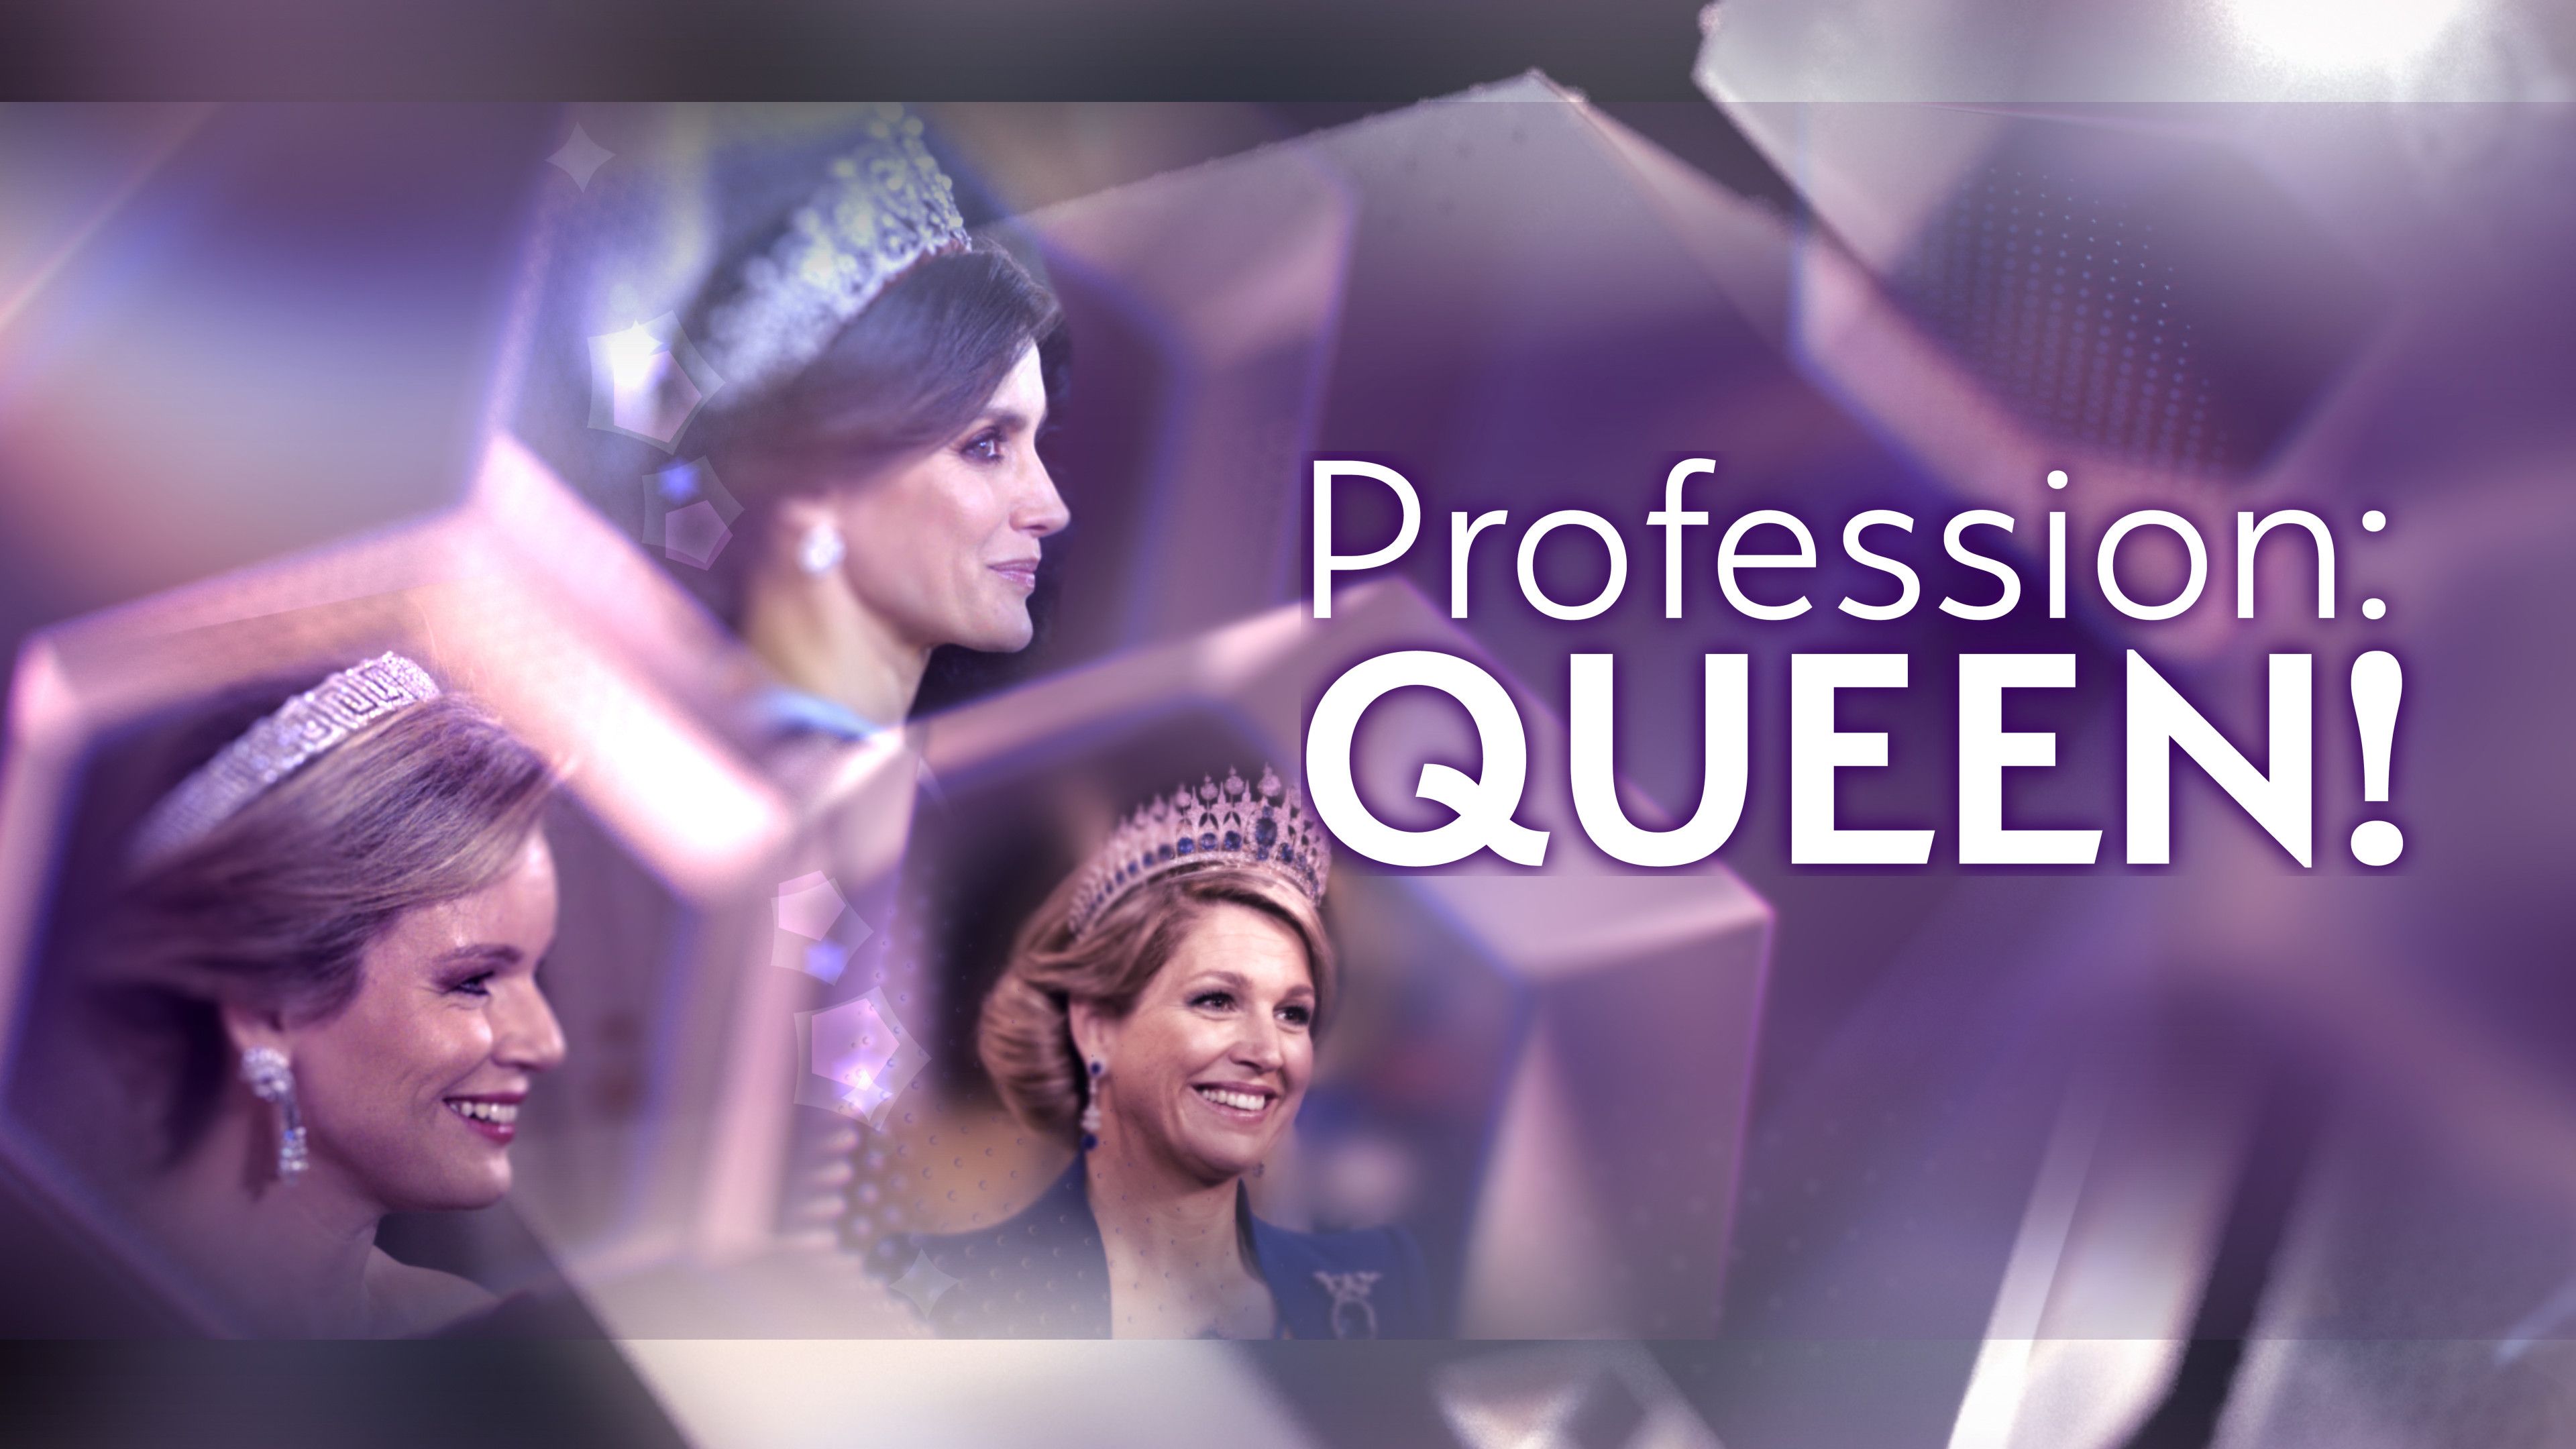 Profession: Queen!